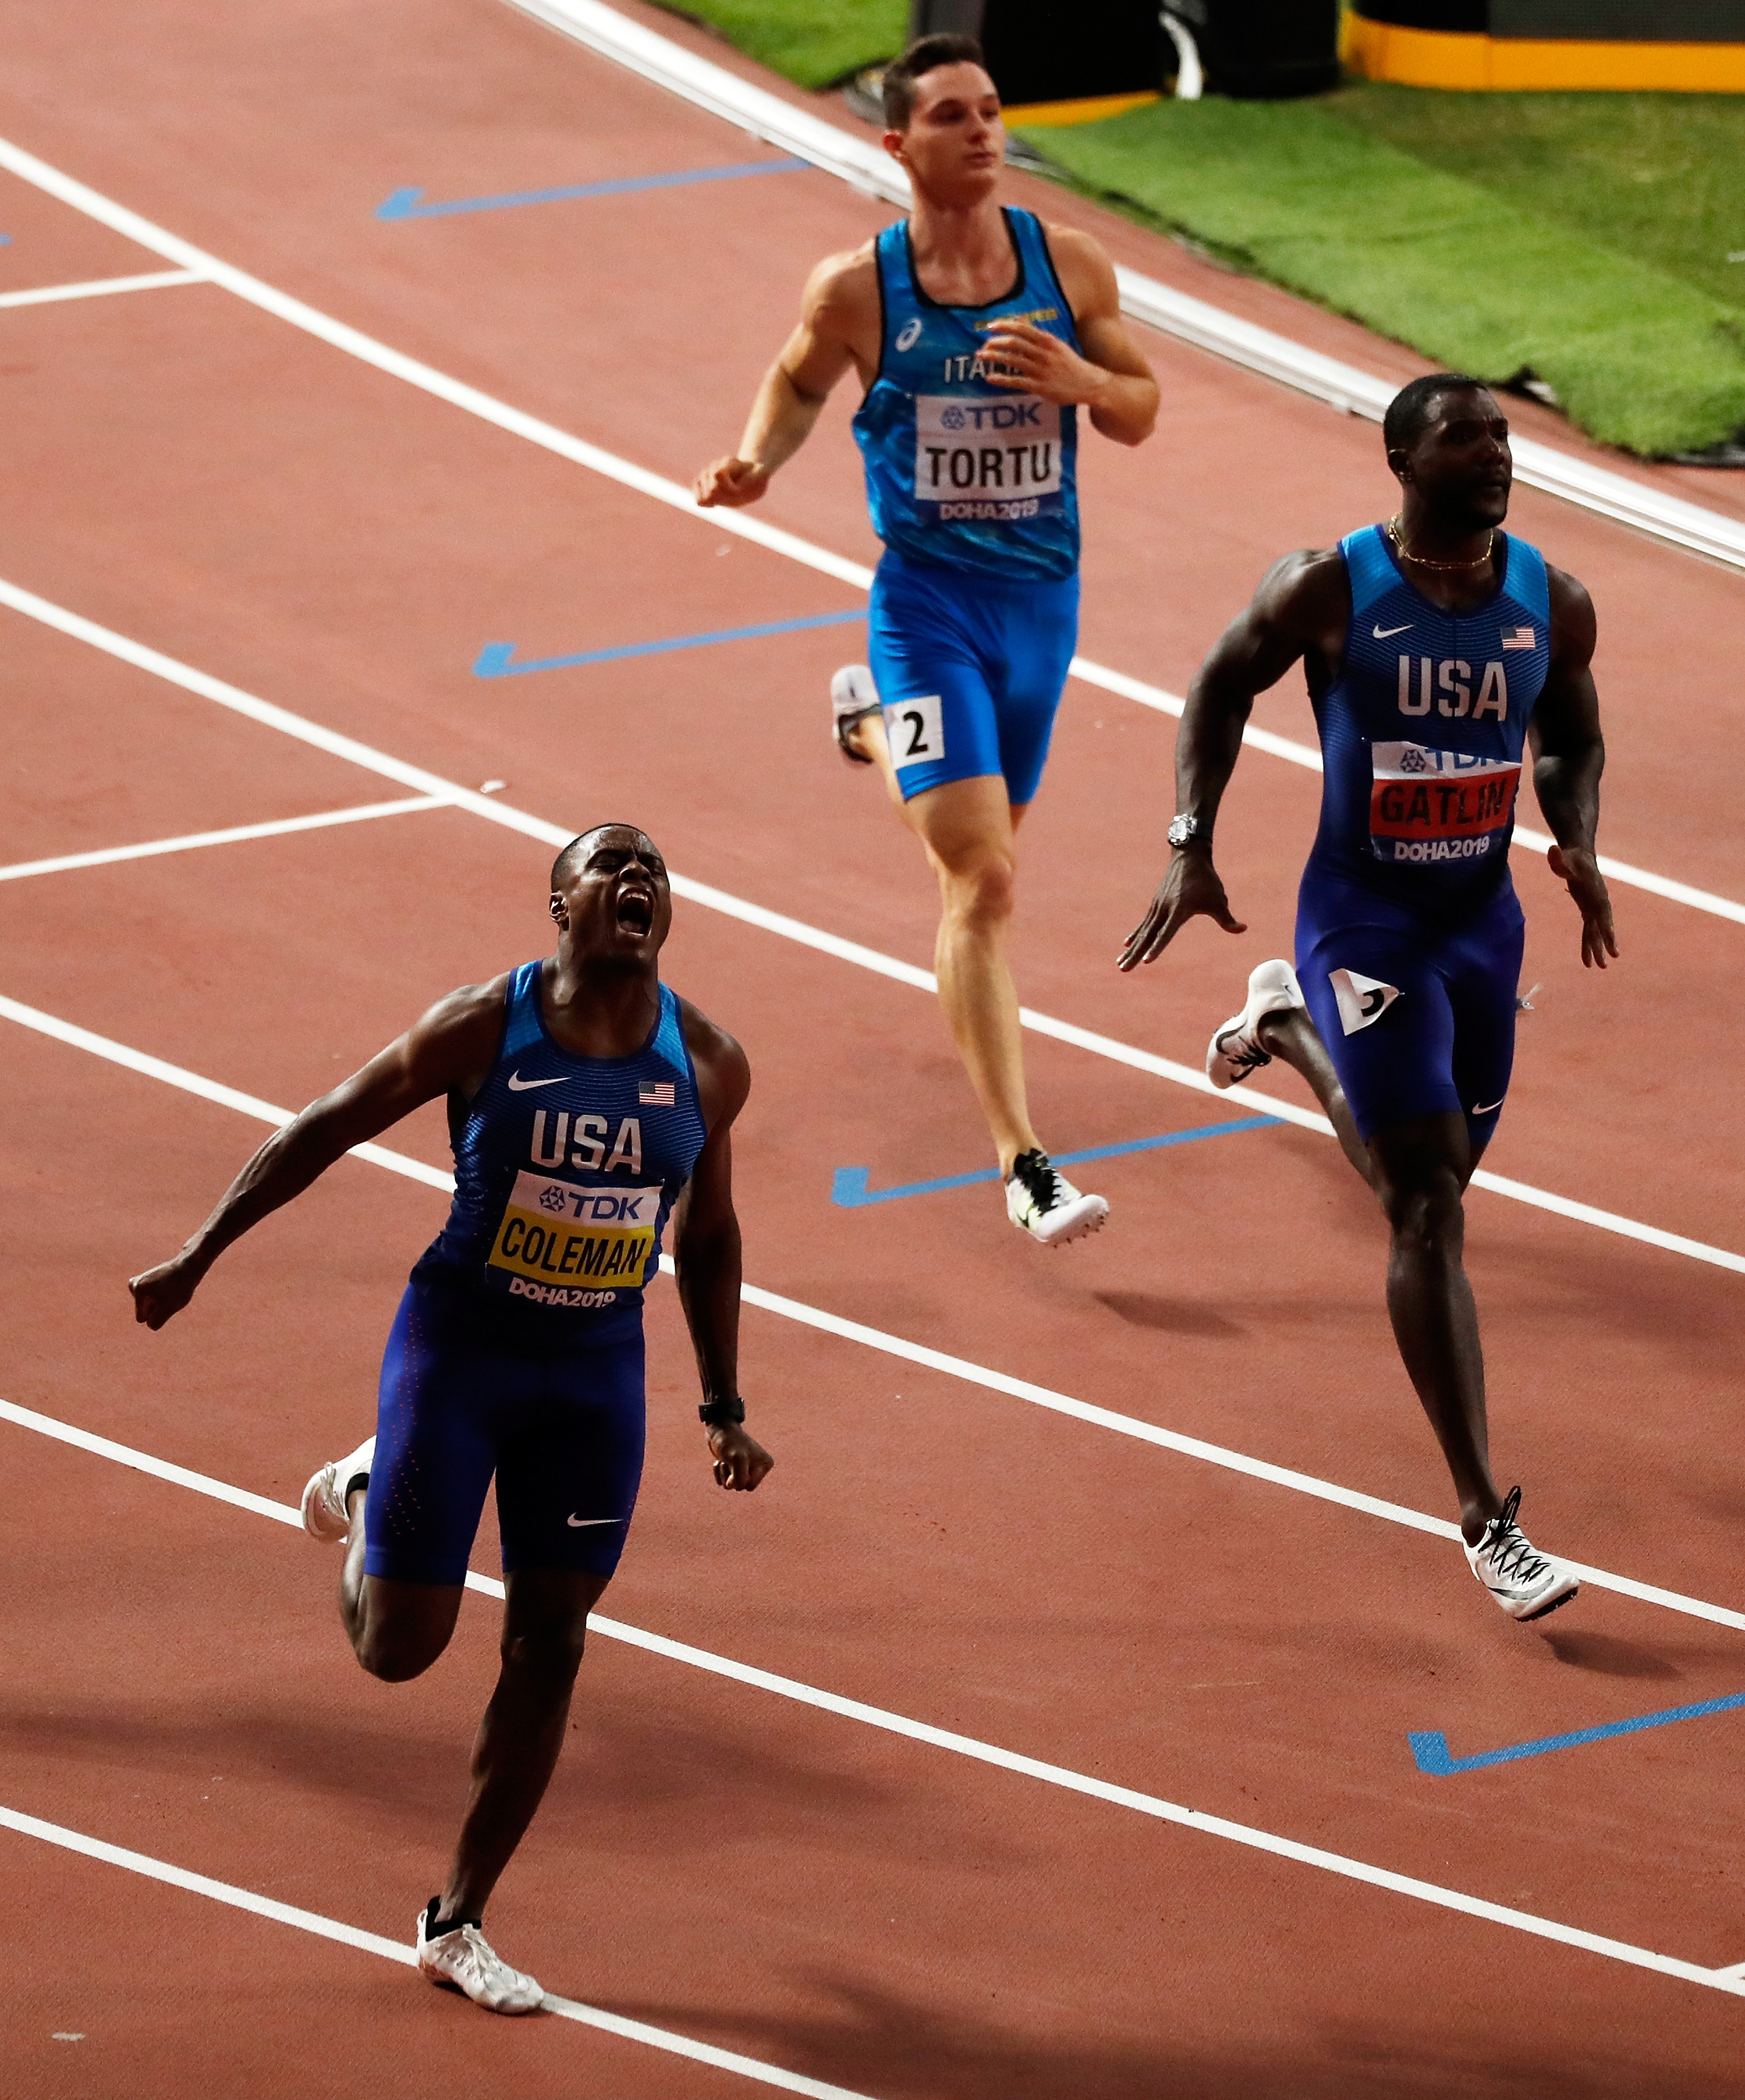 田径——男子100米决赛:美国选手科尔曼夺金